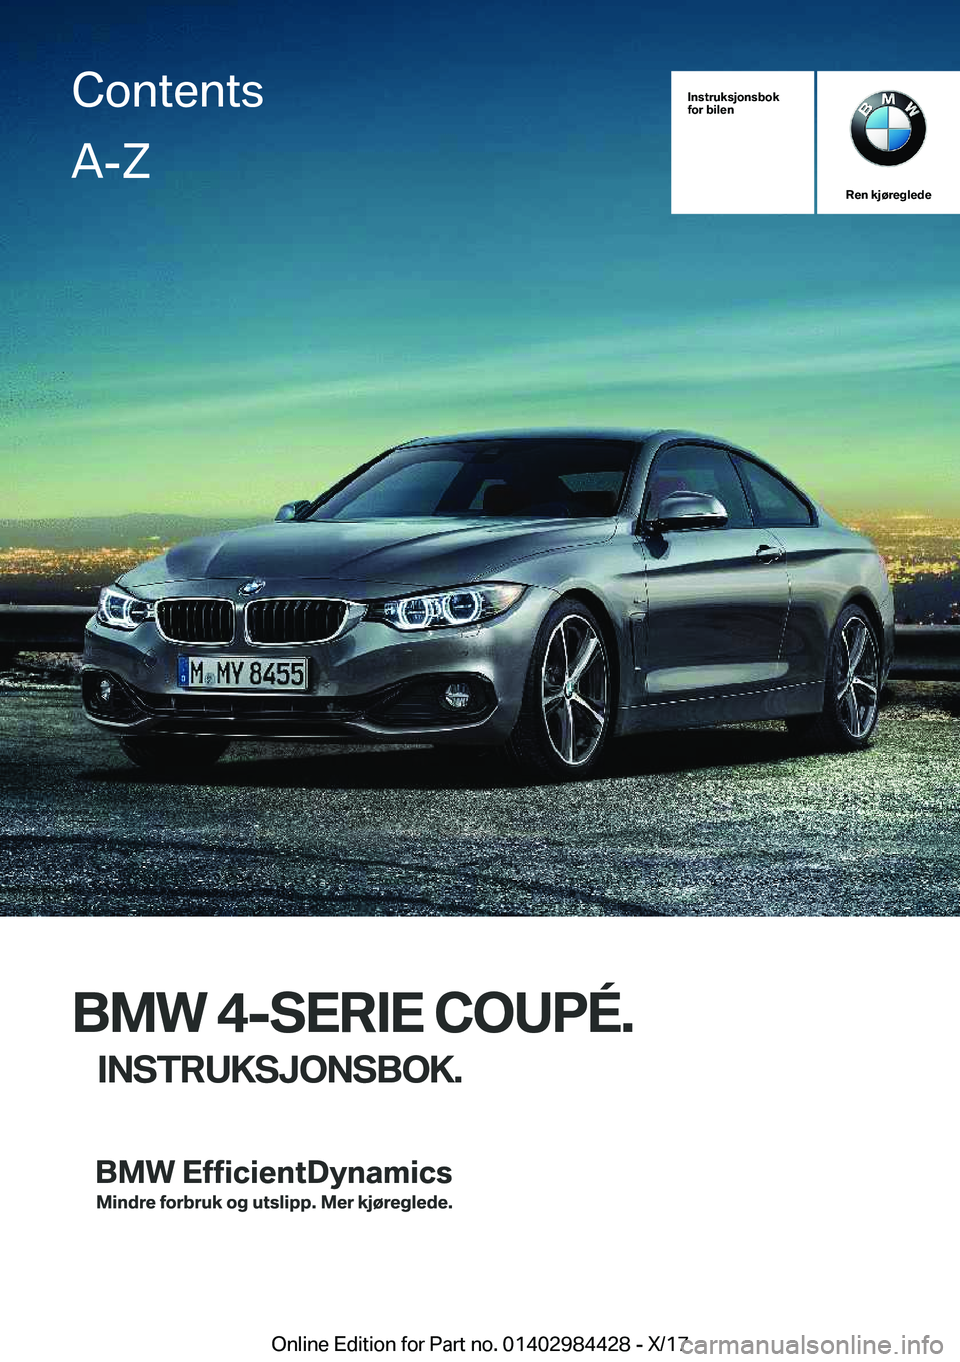 BMW 4 SERIES COUPE 2018  InstruksjonsbØker (in Norwegian) �I�n�s�t�r�u�k�s�j�o�n�s�b�o�k
�f�o�r��b�i�l�e�n
�R�e�n��k�j�